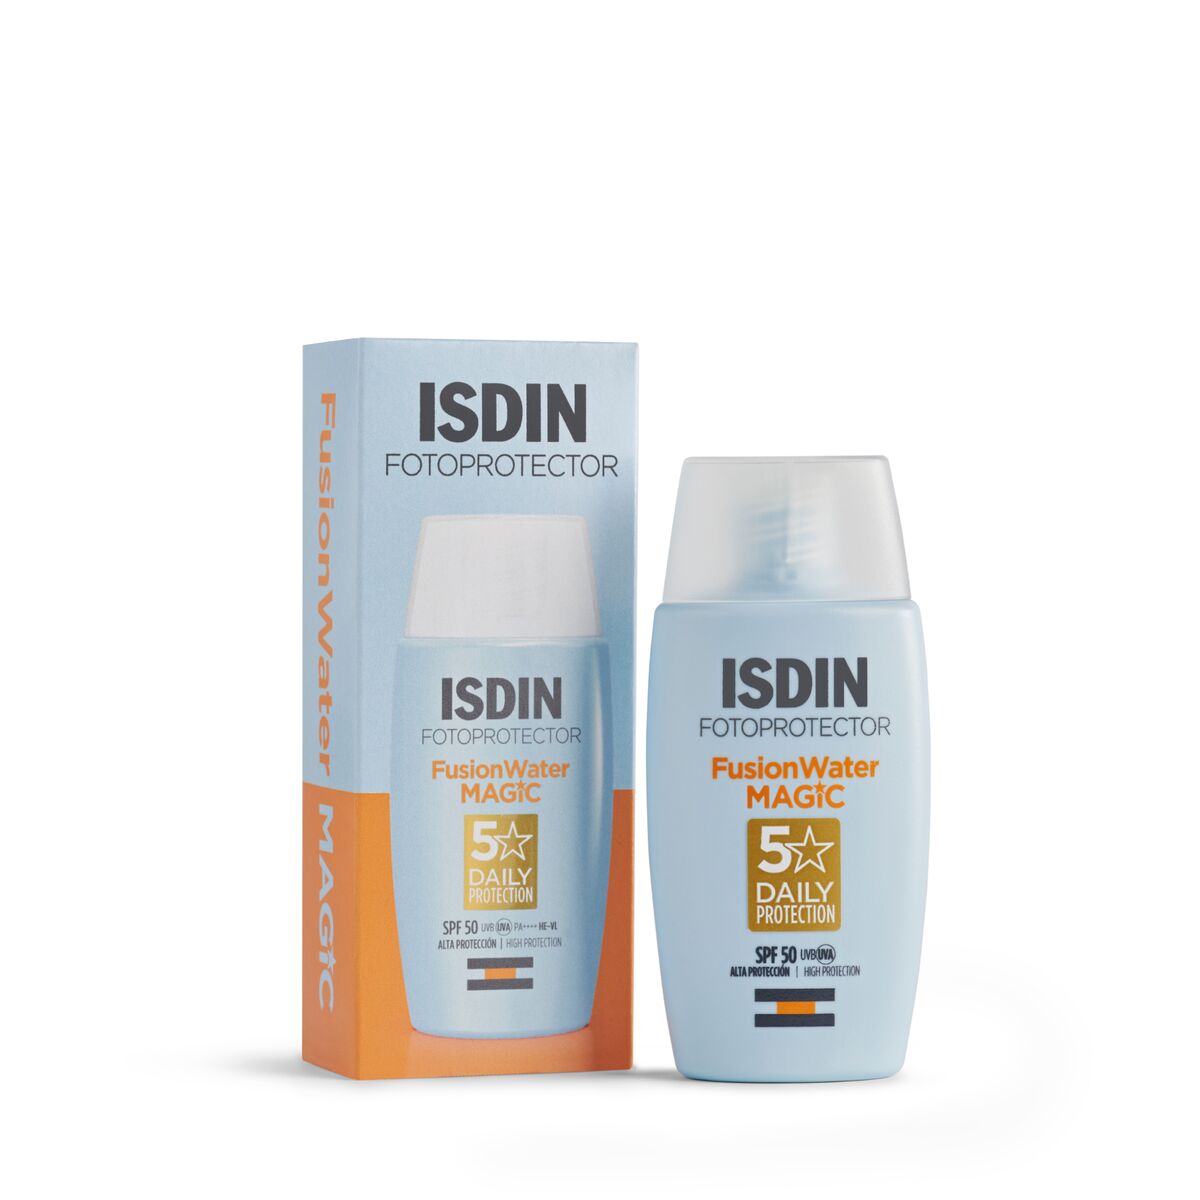 Isdin  Fusion Water SPF50+, fotoprotector para todo tipo de piel 50ml.